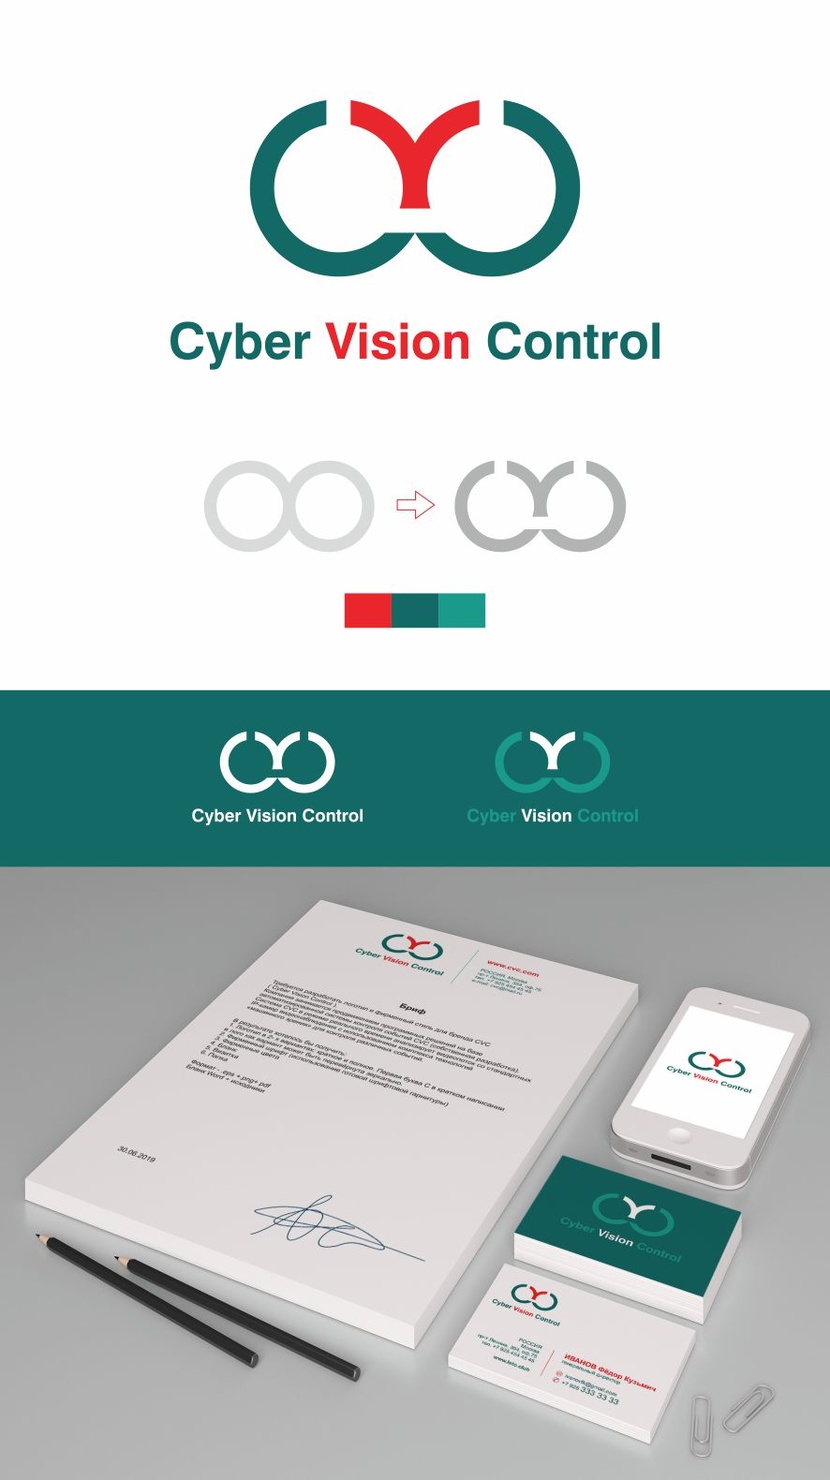 Перевёрнута вторая С. 
Логотип базируется на знаке бесконечности. - Создание логотипа и фирменного стиля для бренда системы событийного видеоконтроля CVC ( Cyber Vision Control  )